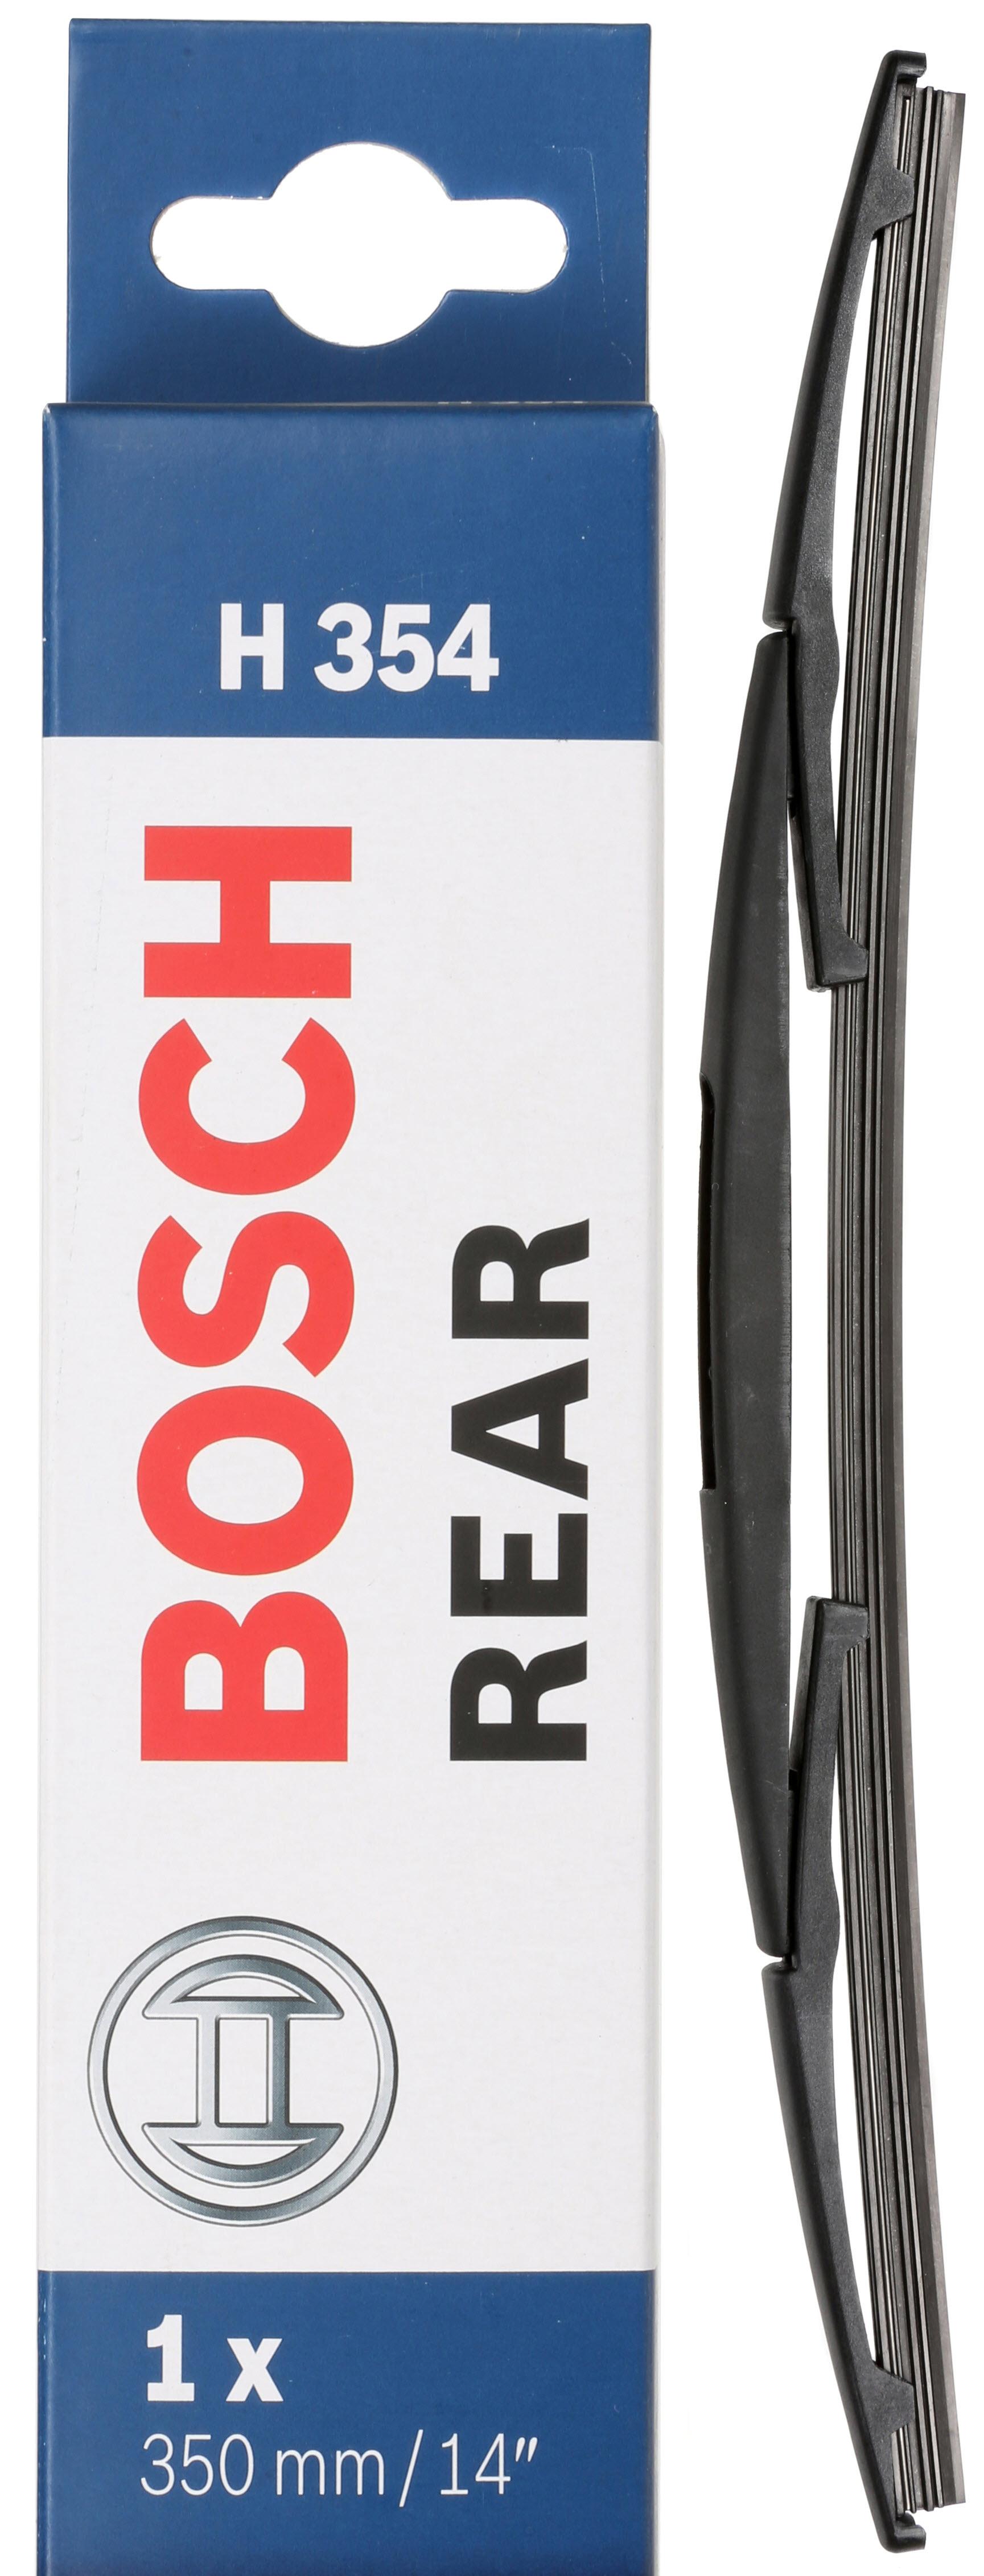 Bosch Rear Wiper H354